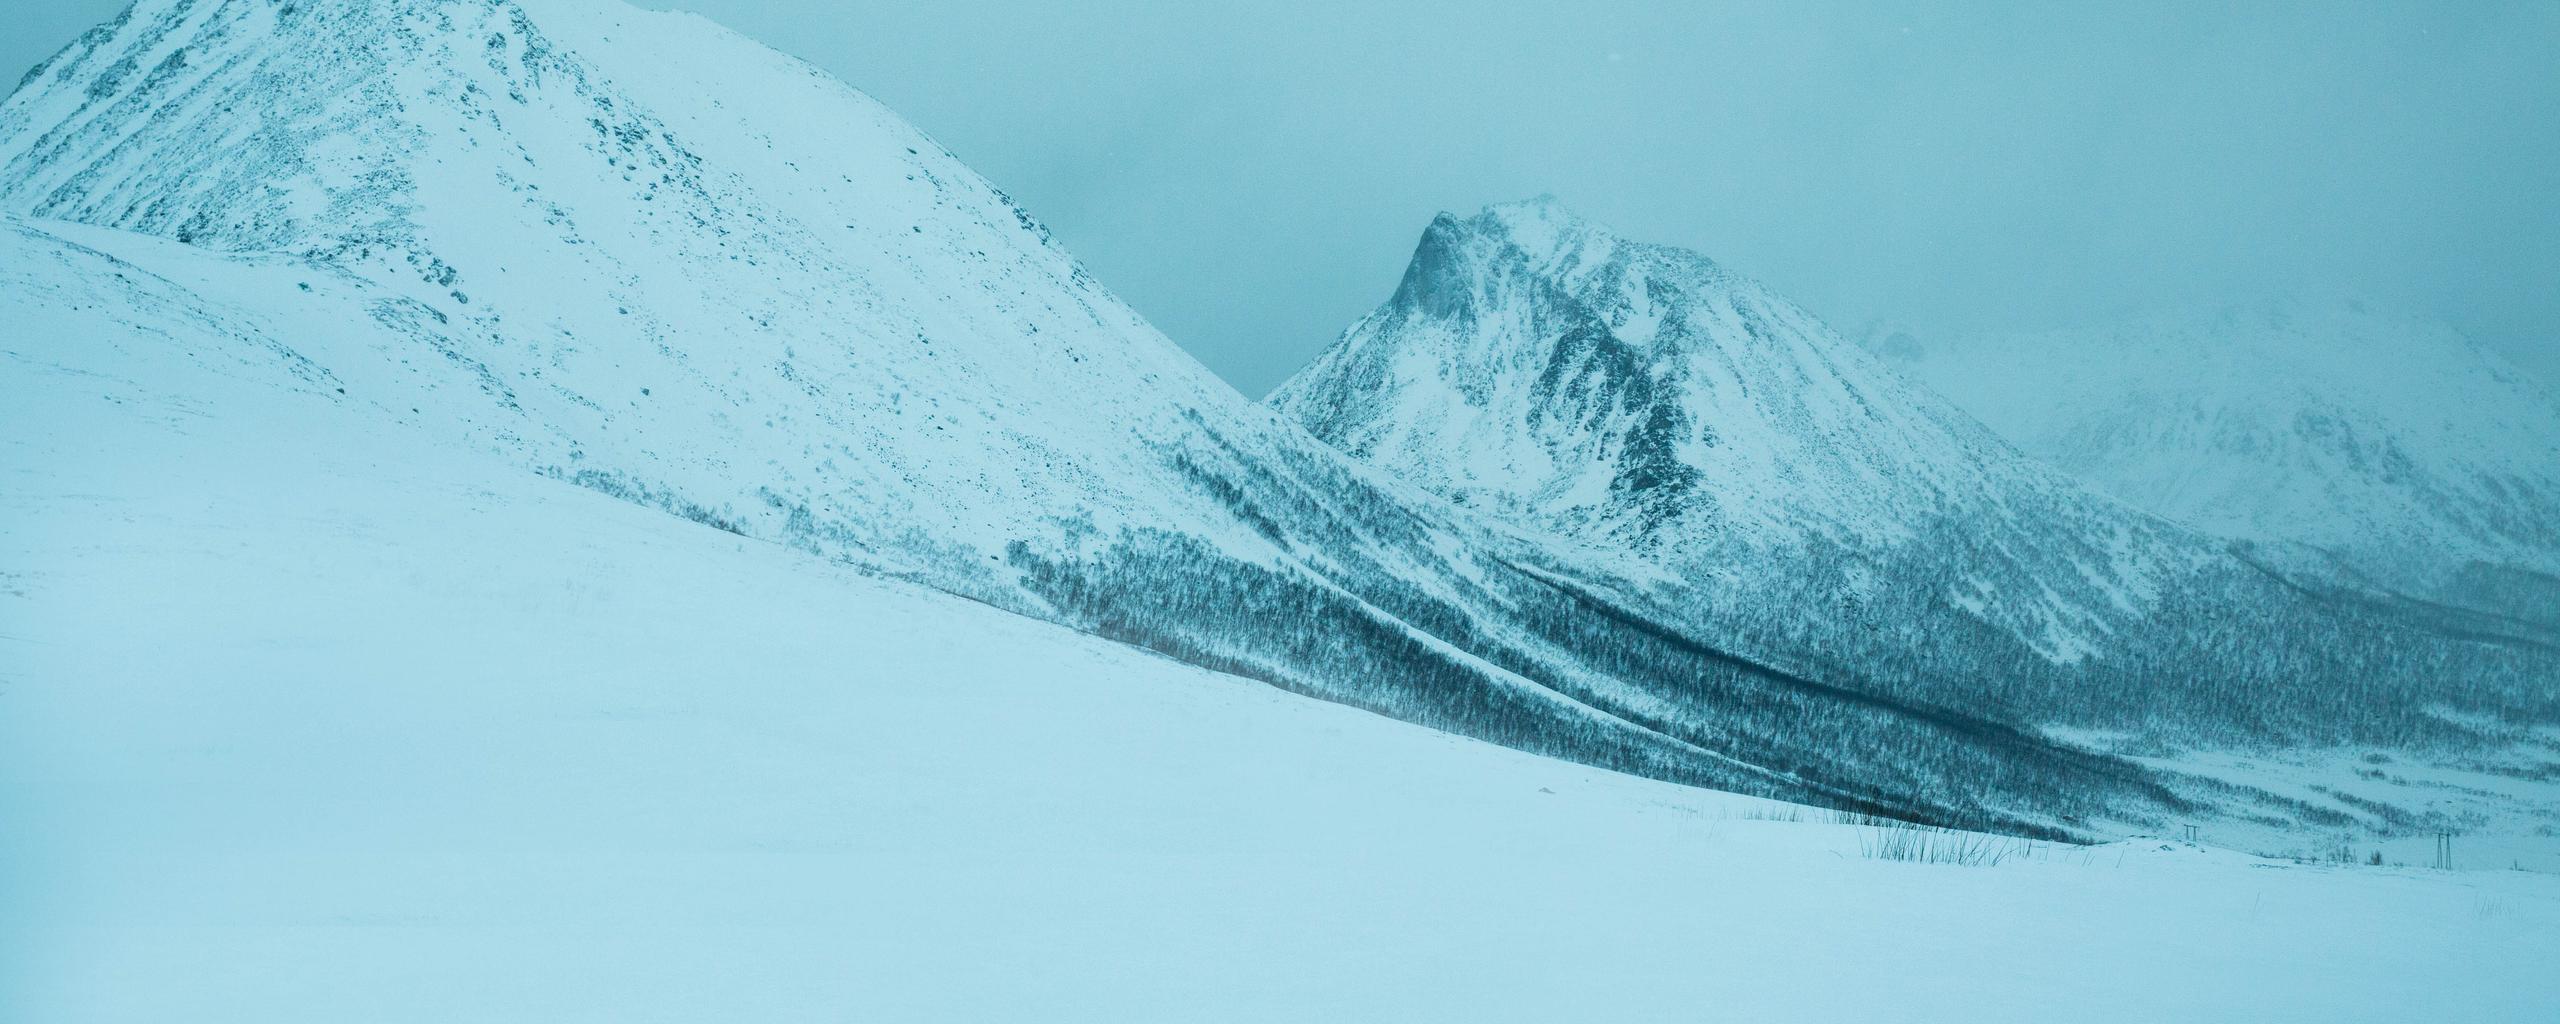 Norway snowy landscape